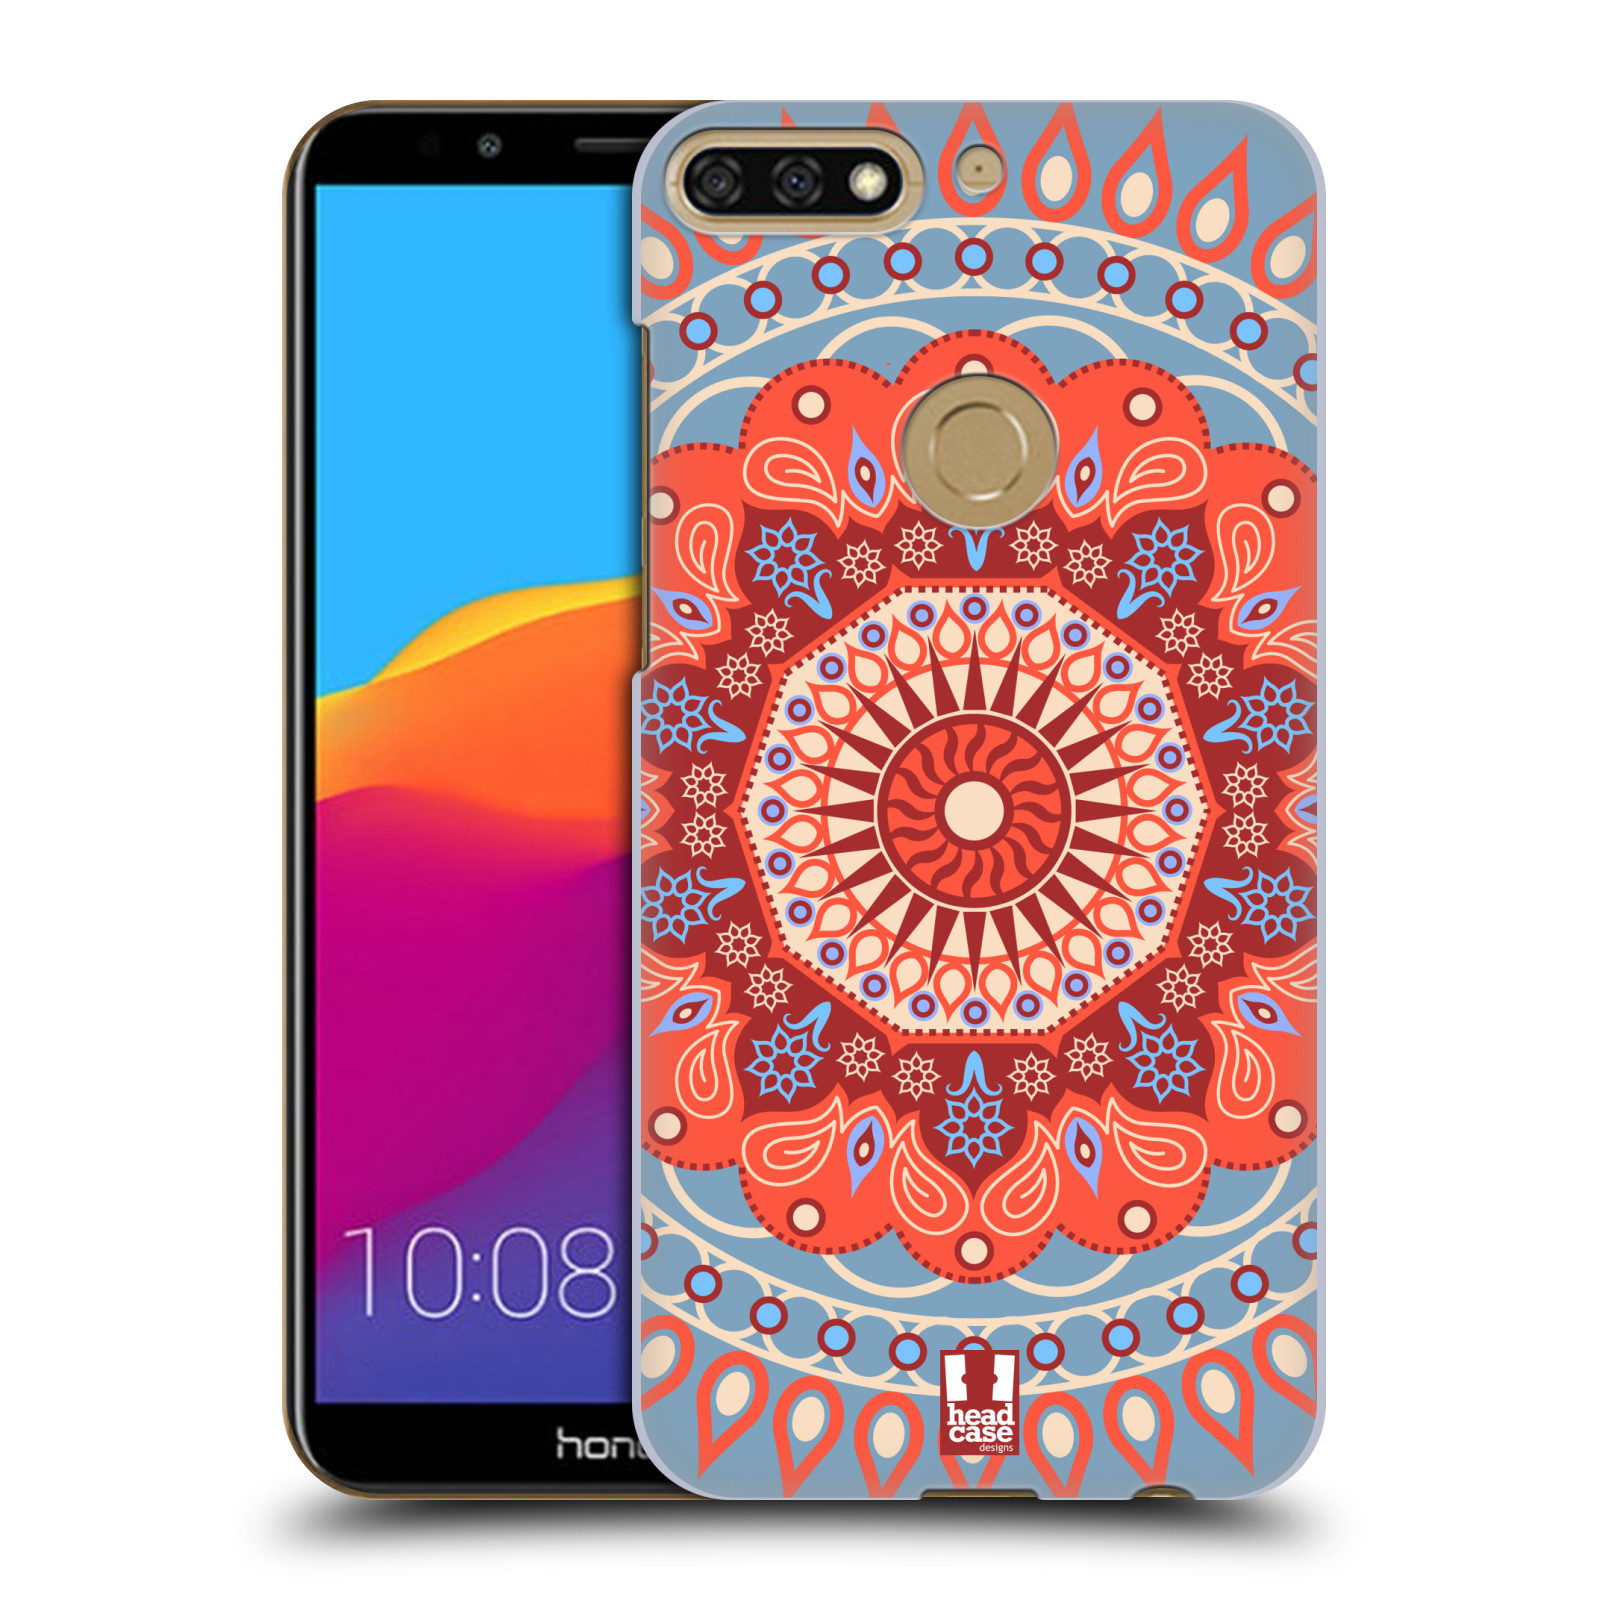 HEAD CASE plastový obal na mobil Honor 7c vzor Indie Mandala slunce barevný motiv ČERVENÁ A MODRÁ